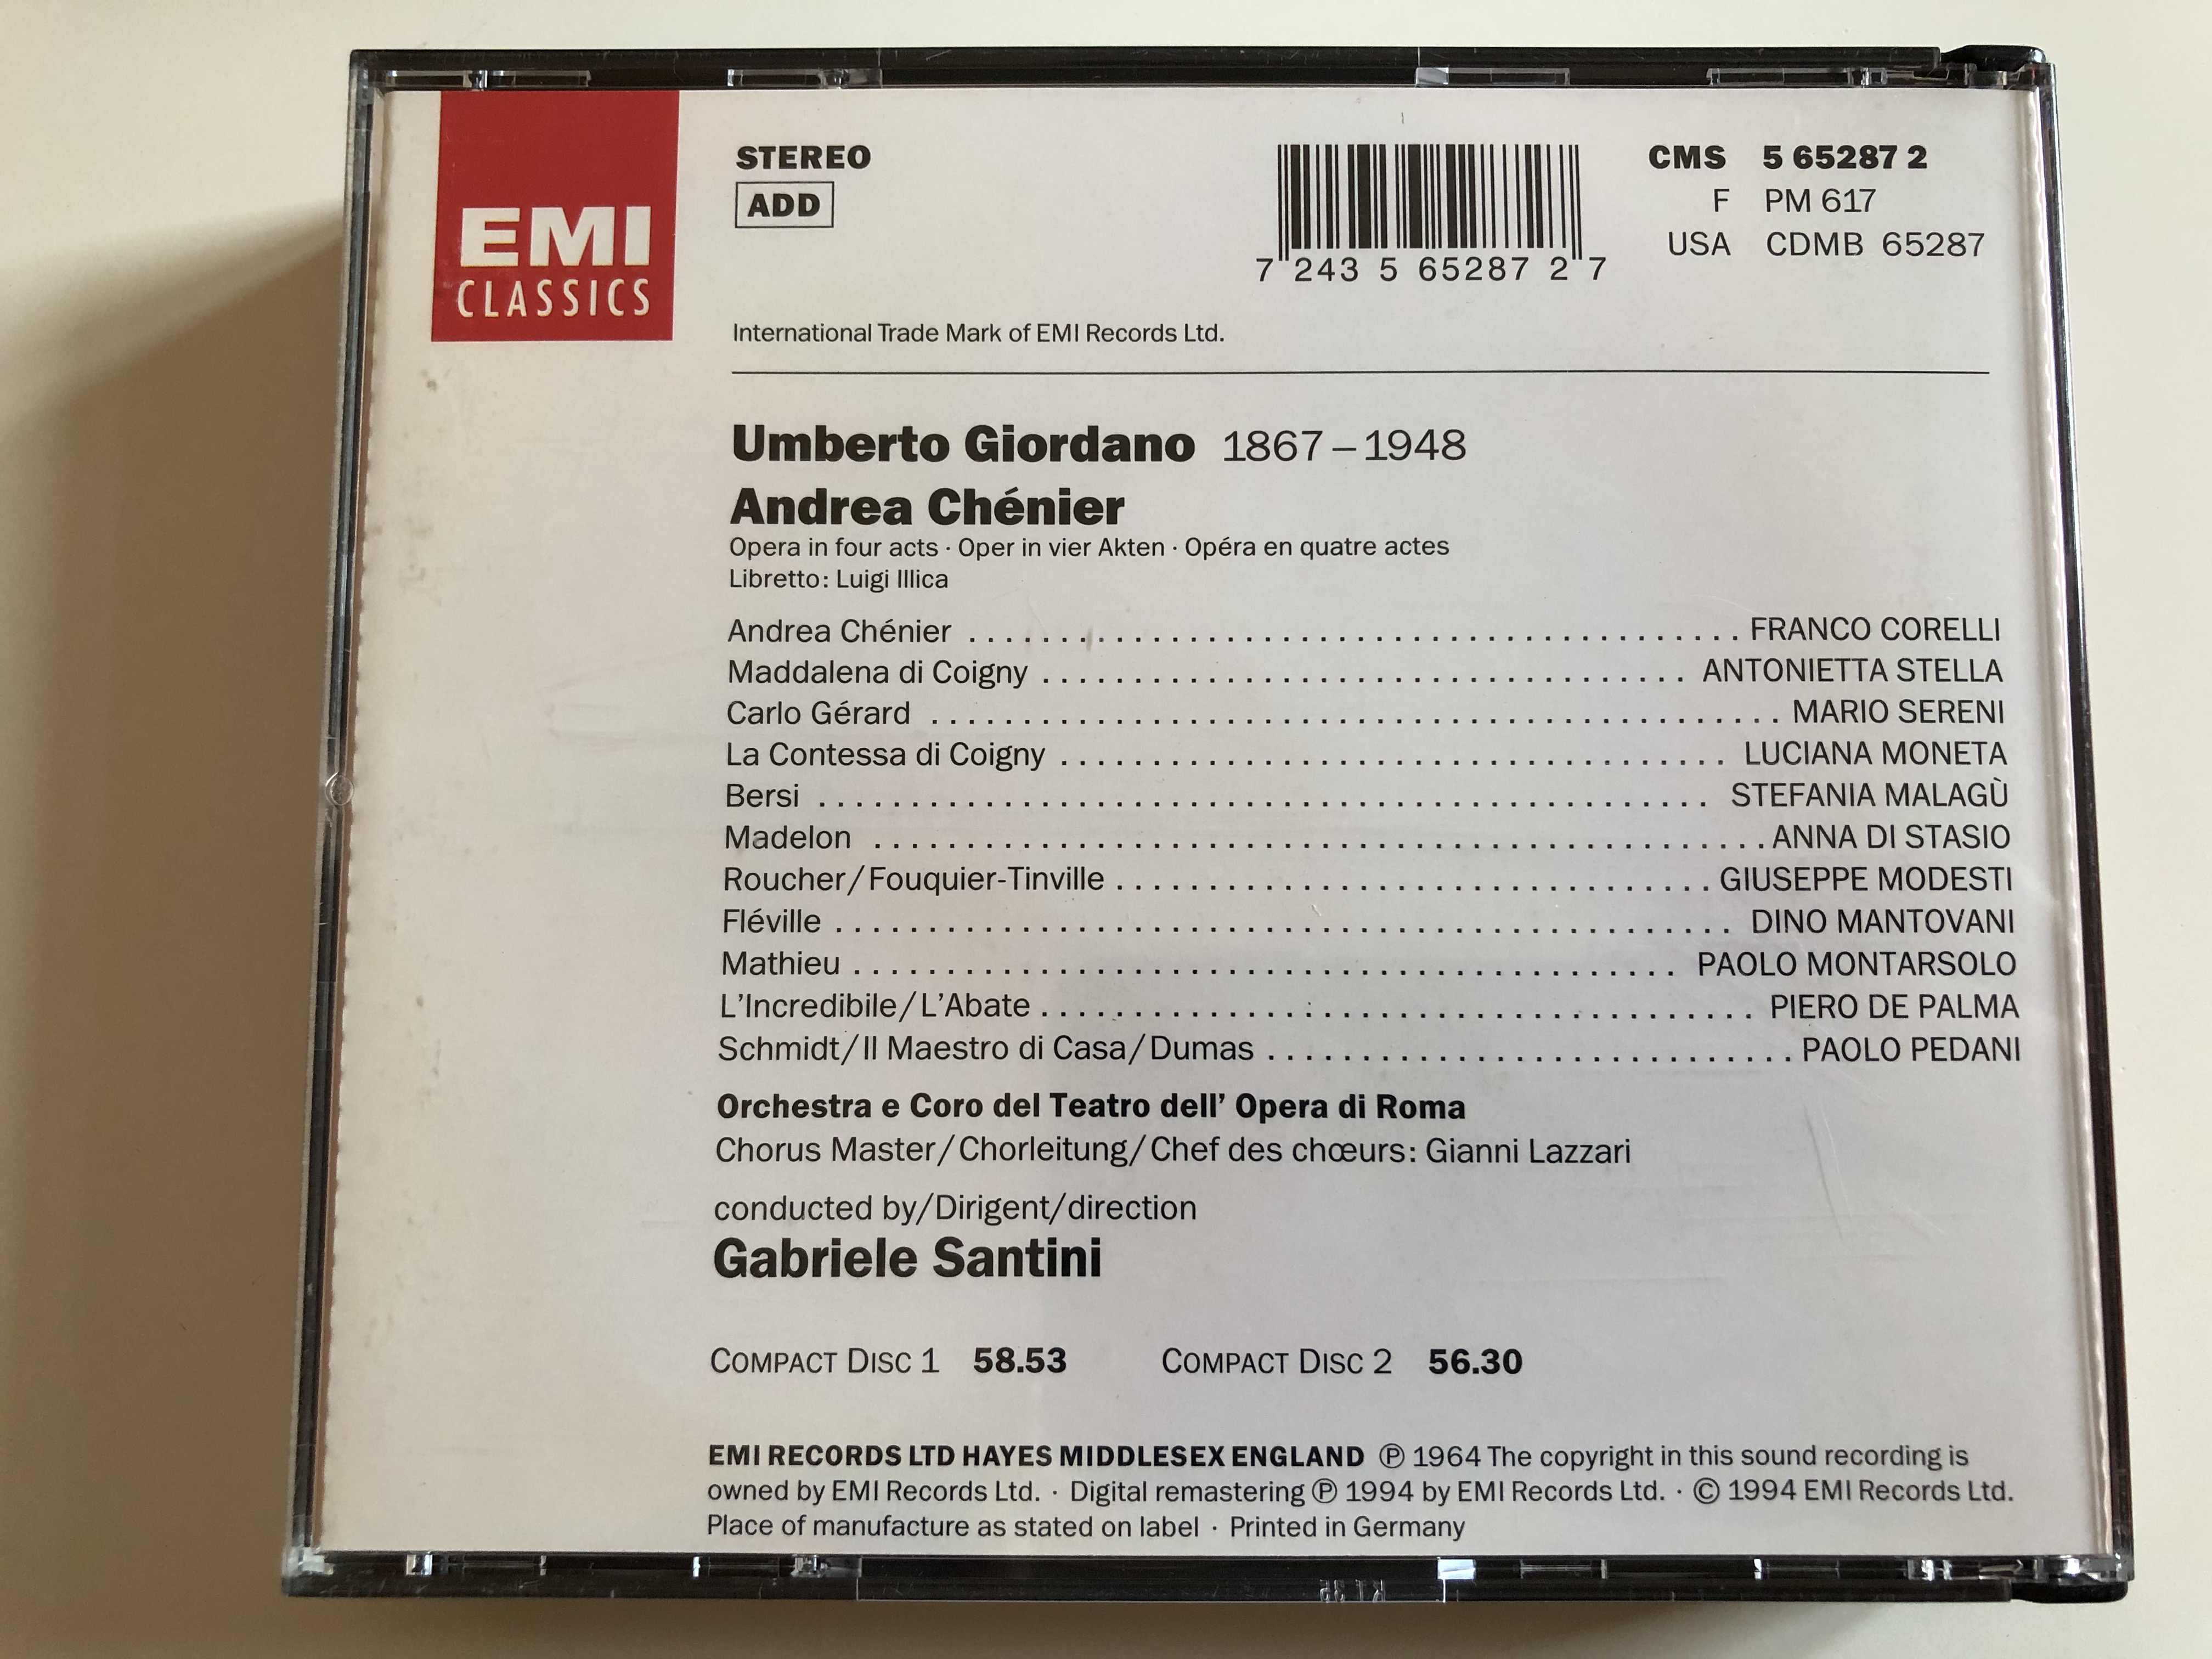 giordano-andrea-ch-nier-corelli-sereni-stella-malag-orchestra-e-coro-del-teatro-dell-opera-di-roma-gabriele-santini-emi-records-ltd.-2x-audio-cd-1994-stereo-cms-5-65287-2-5-.jpg